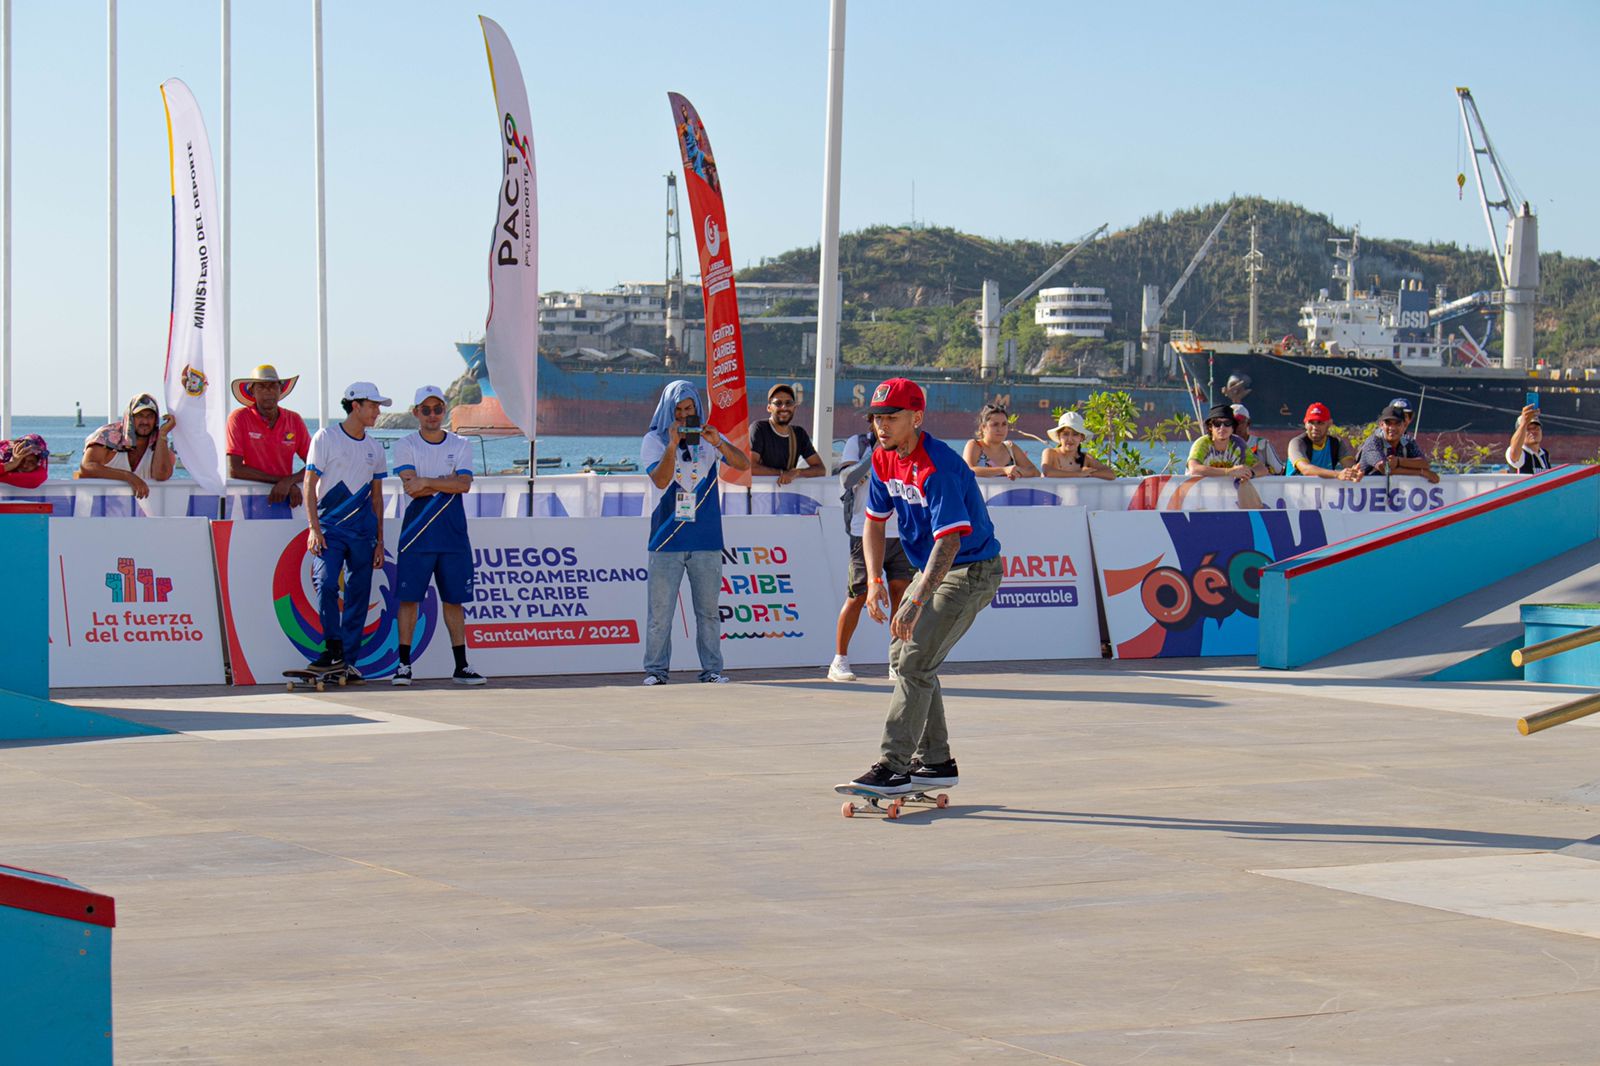 16 deportistas de skateboarding disputarán la final en los I Juegos Centroamericanos y del Caribe Mar y Playa